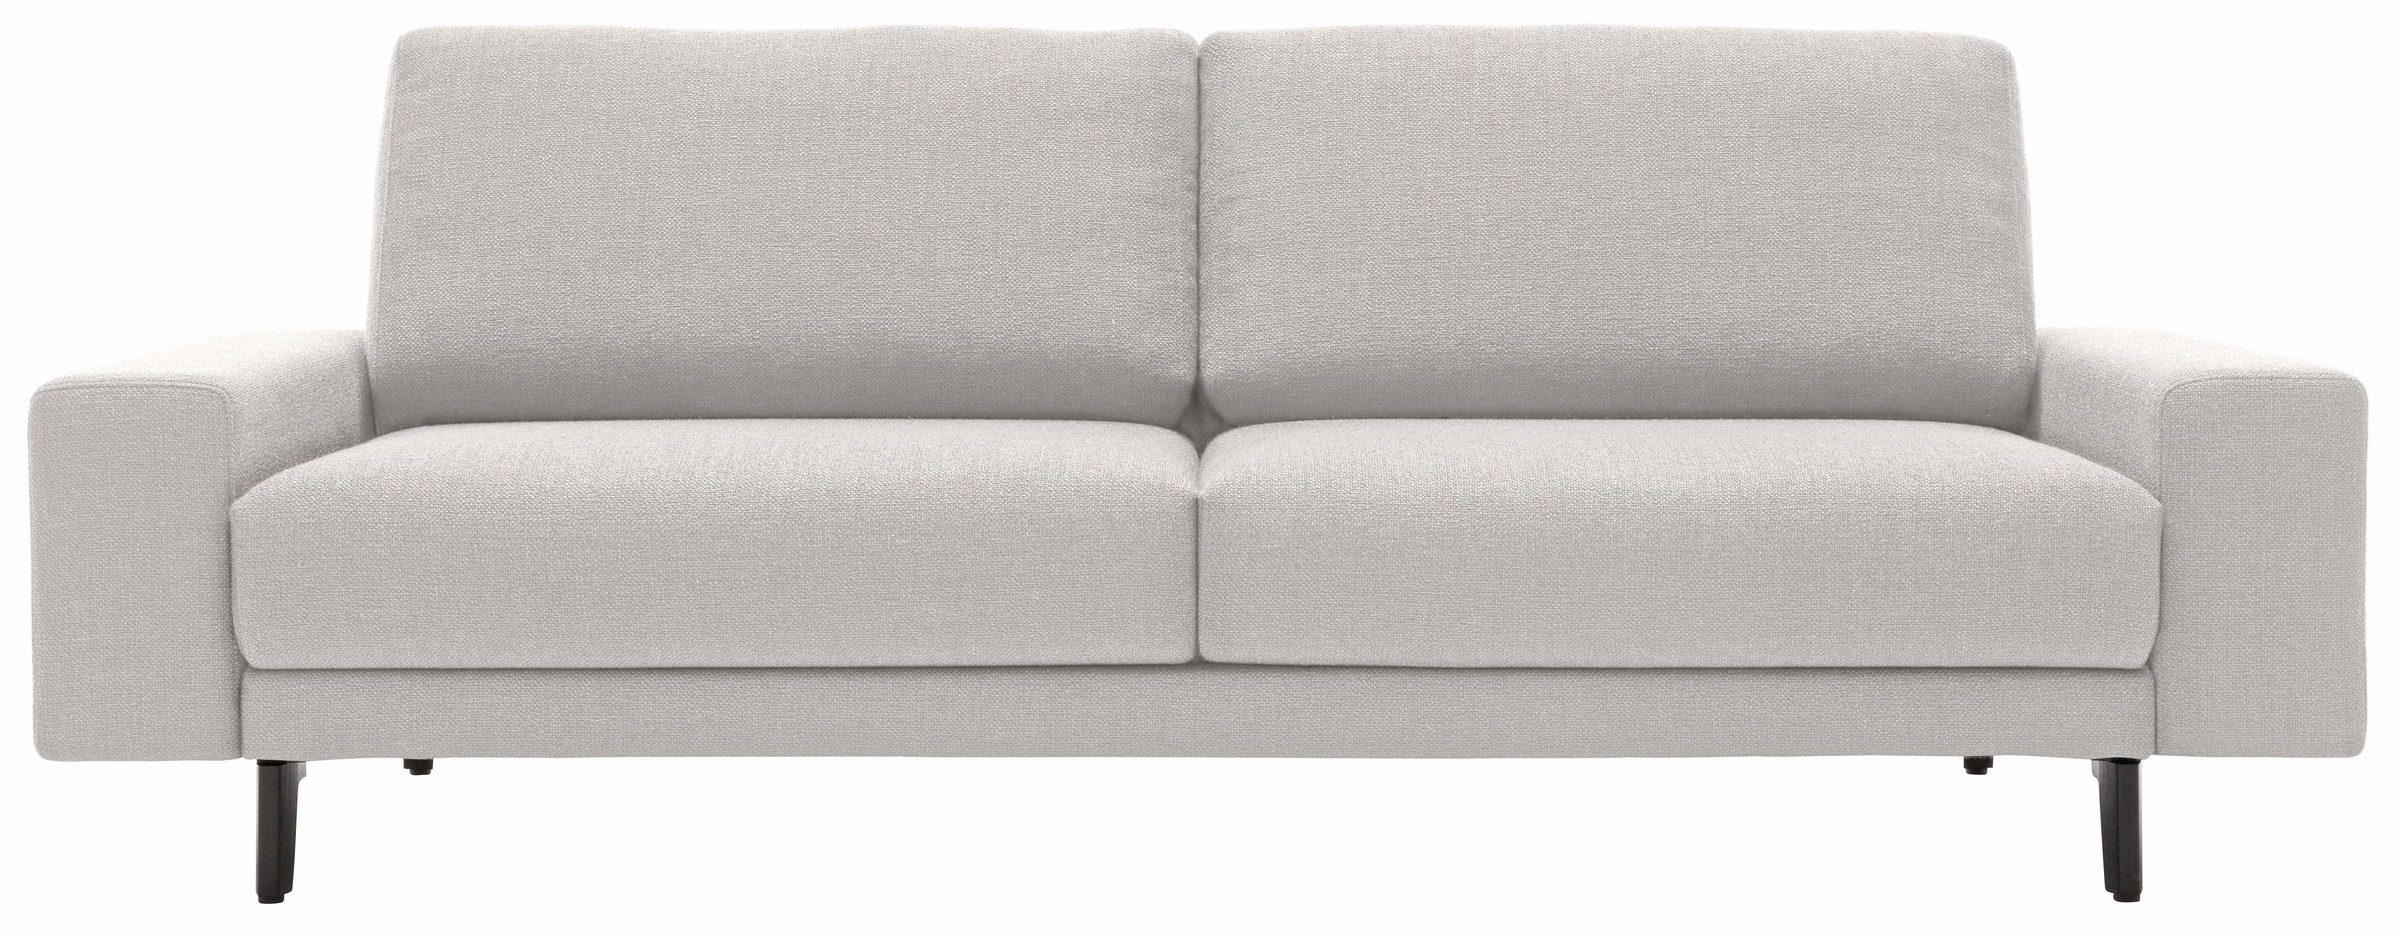 180 | sofa kaufen Breite hülsta BAUR cm breit »hs.450«, Alugussfüße Armlehne umbragrau, niedrig, 2-Sitzer in